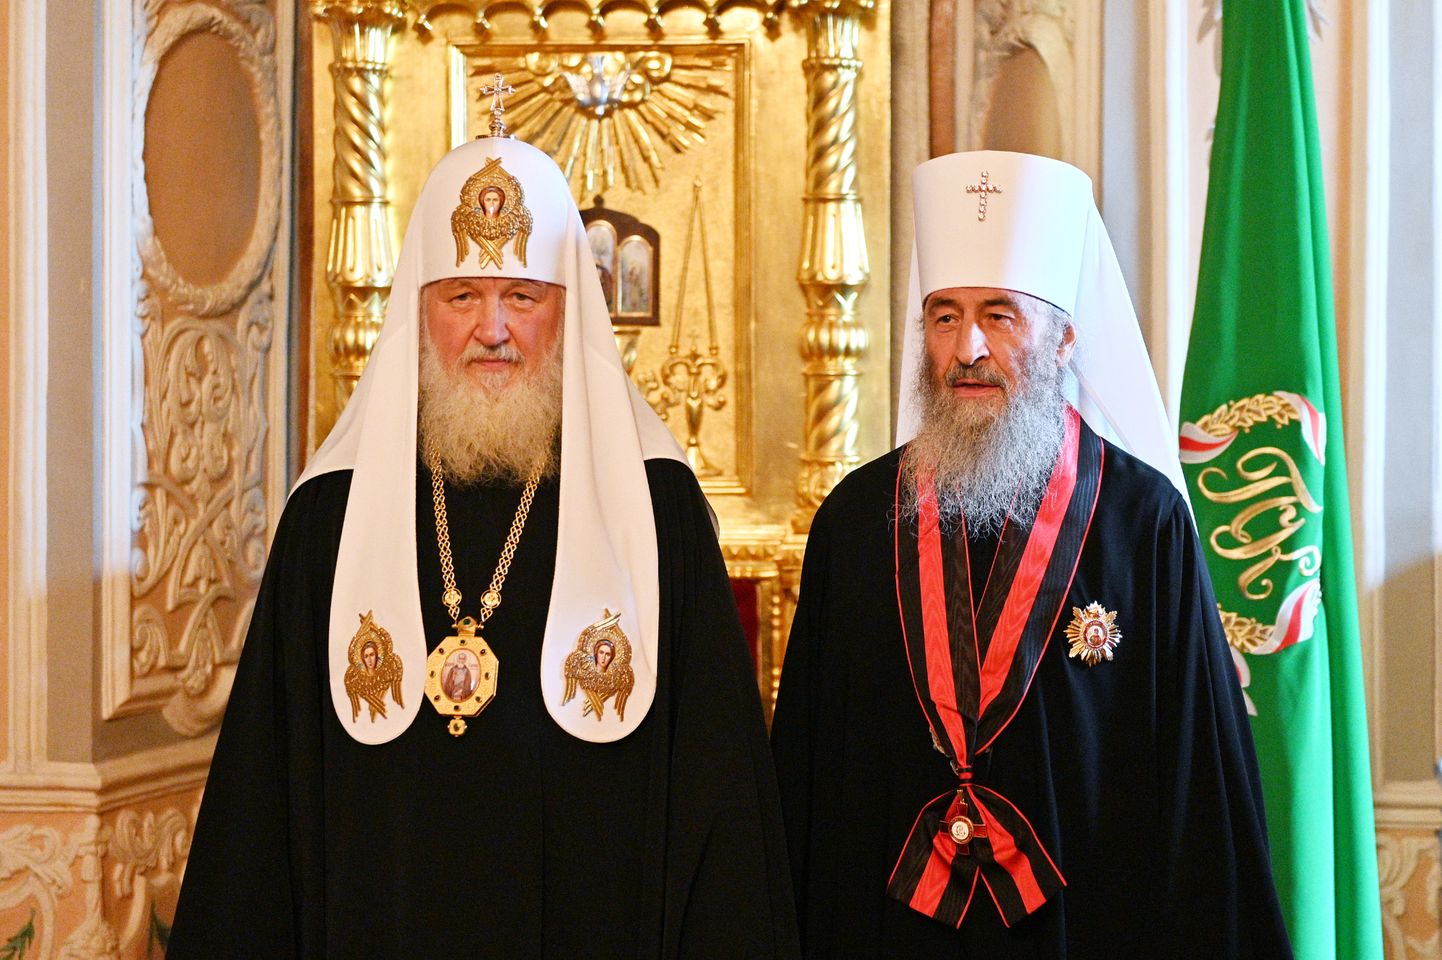 Патриарх РПЦ Кирилл (Гундяев) благословил киевского метоблюстителя Онуфрия (Березовского) на должность предстоятеля УПЦ в 2014 году.